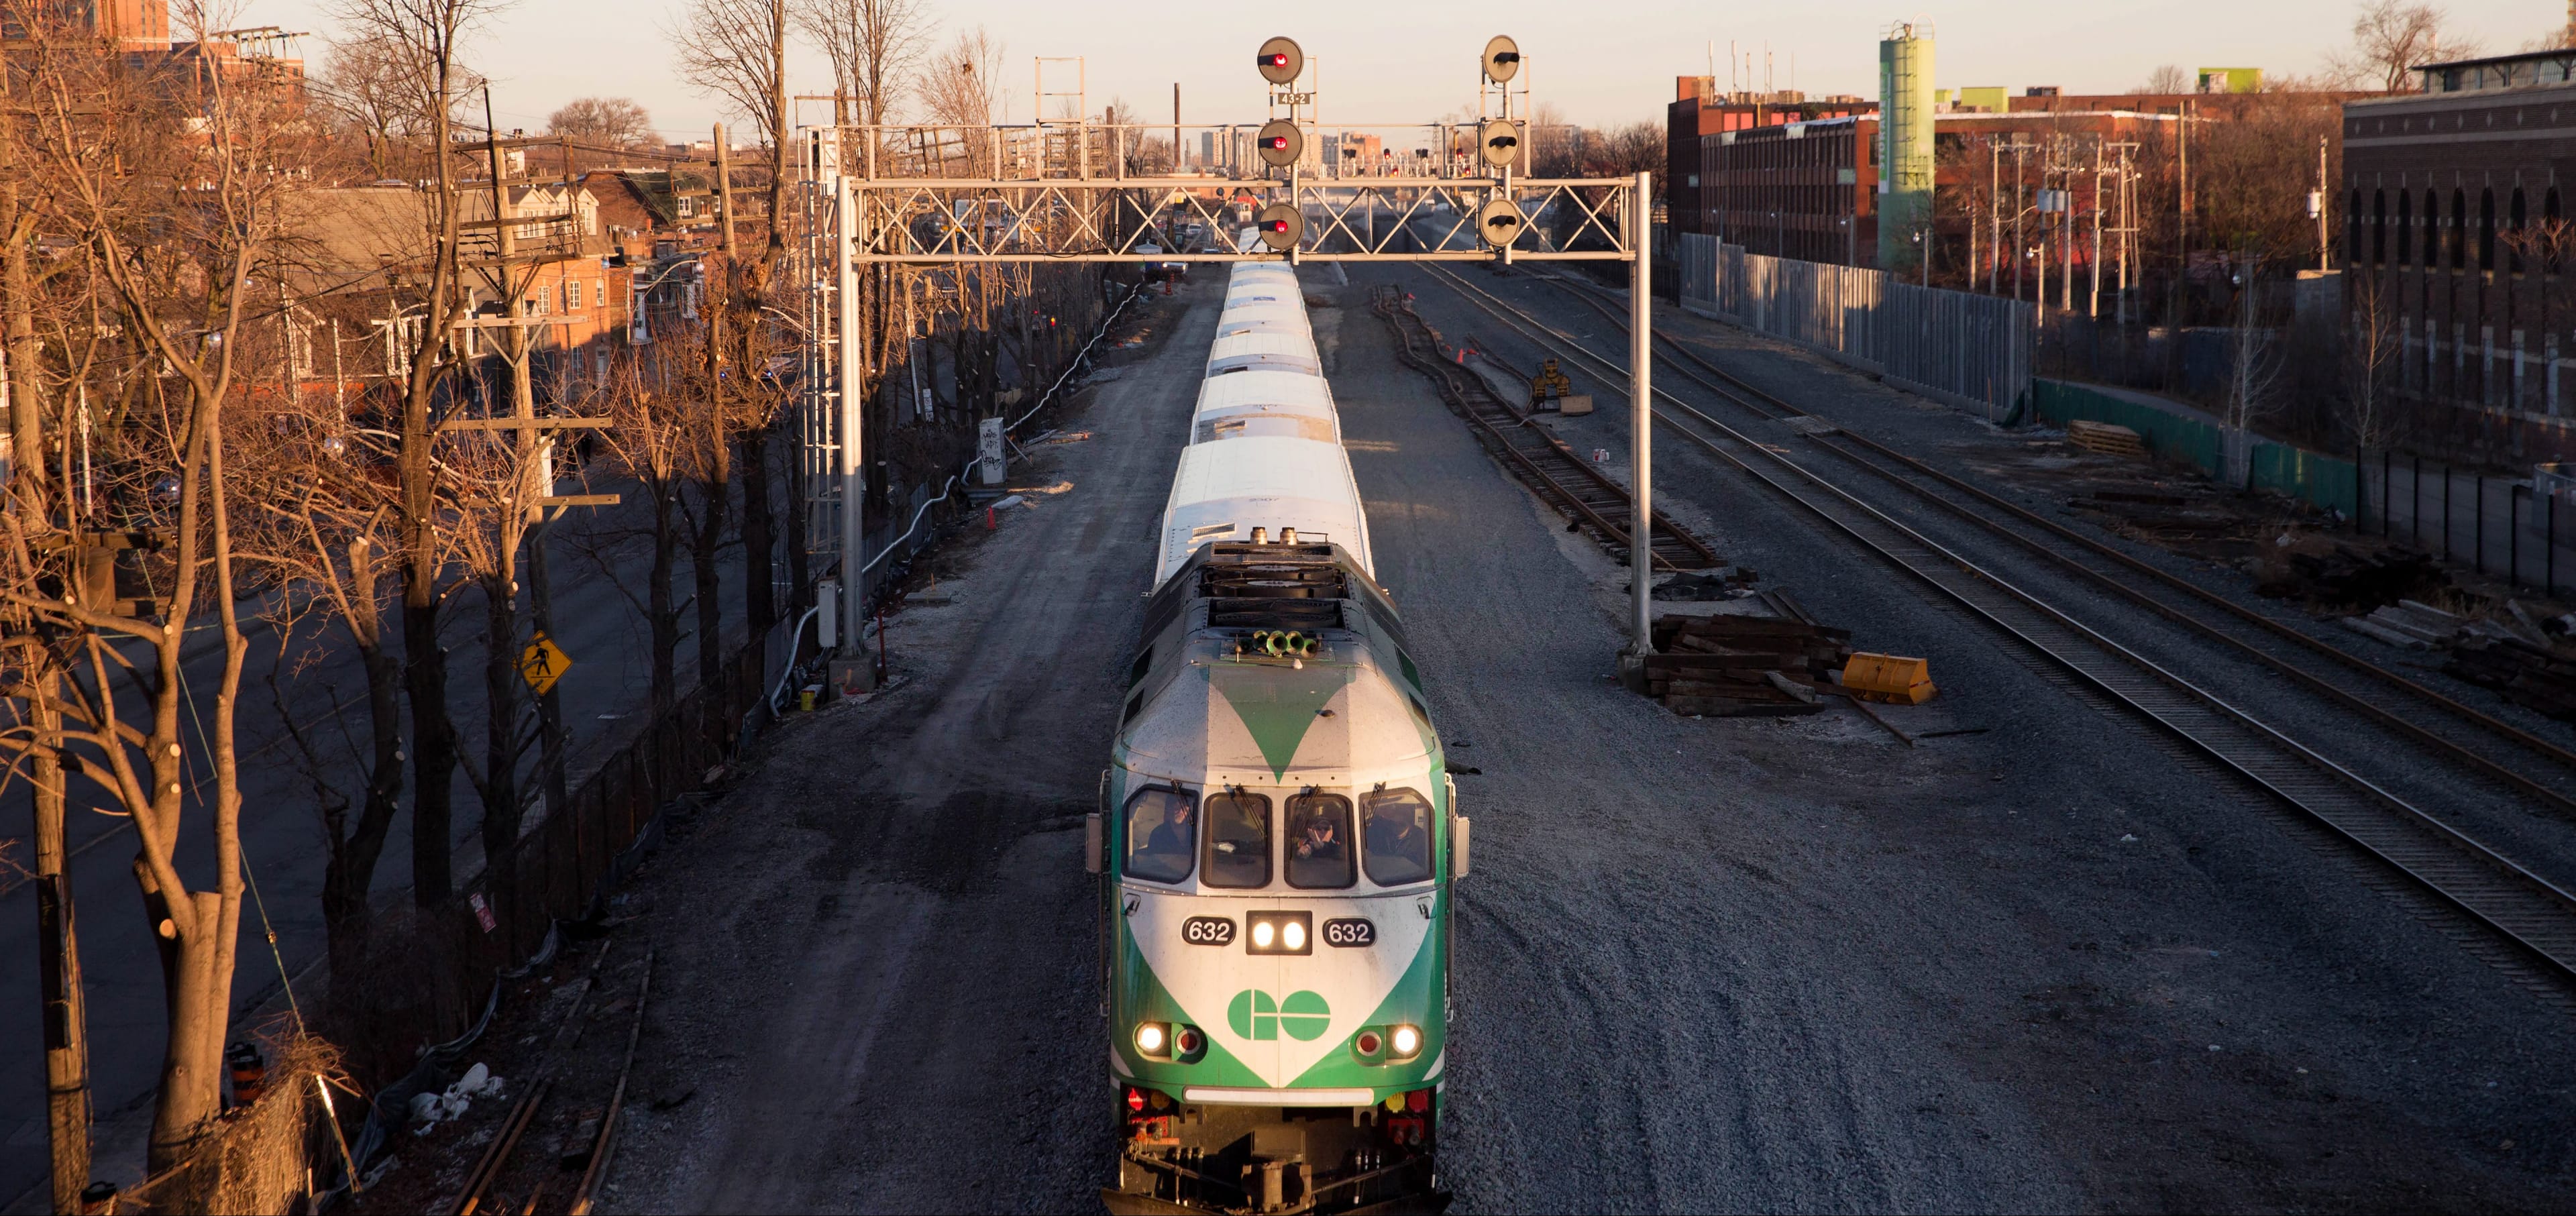 GO train in winter